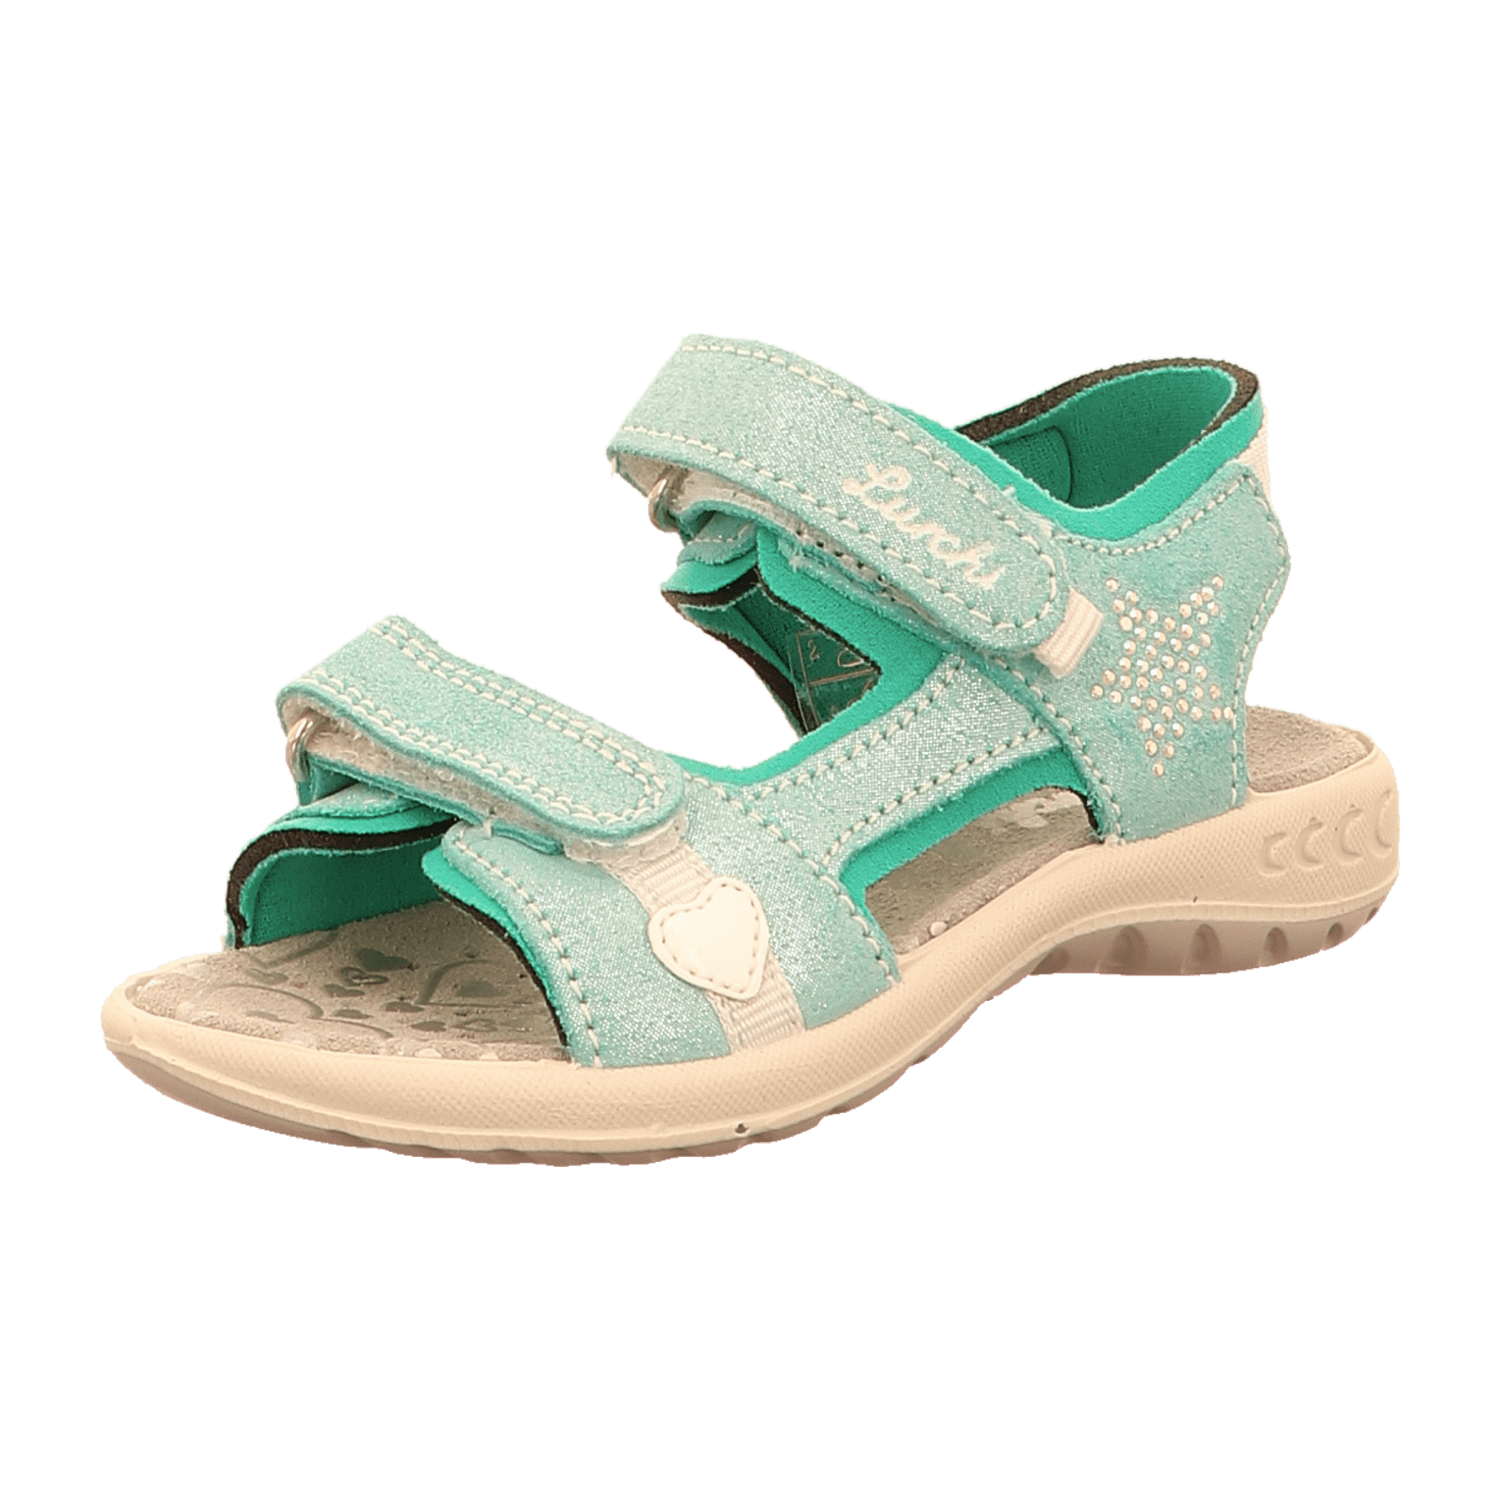 Lurchi kaufen Sandalen Kinder Mädchen für